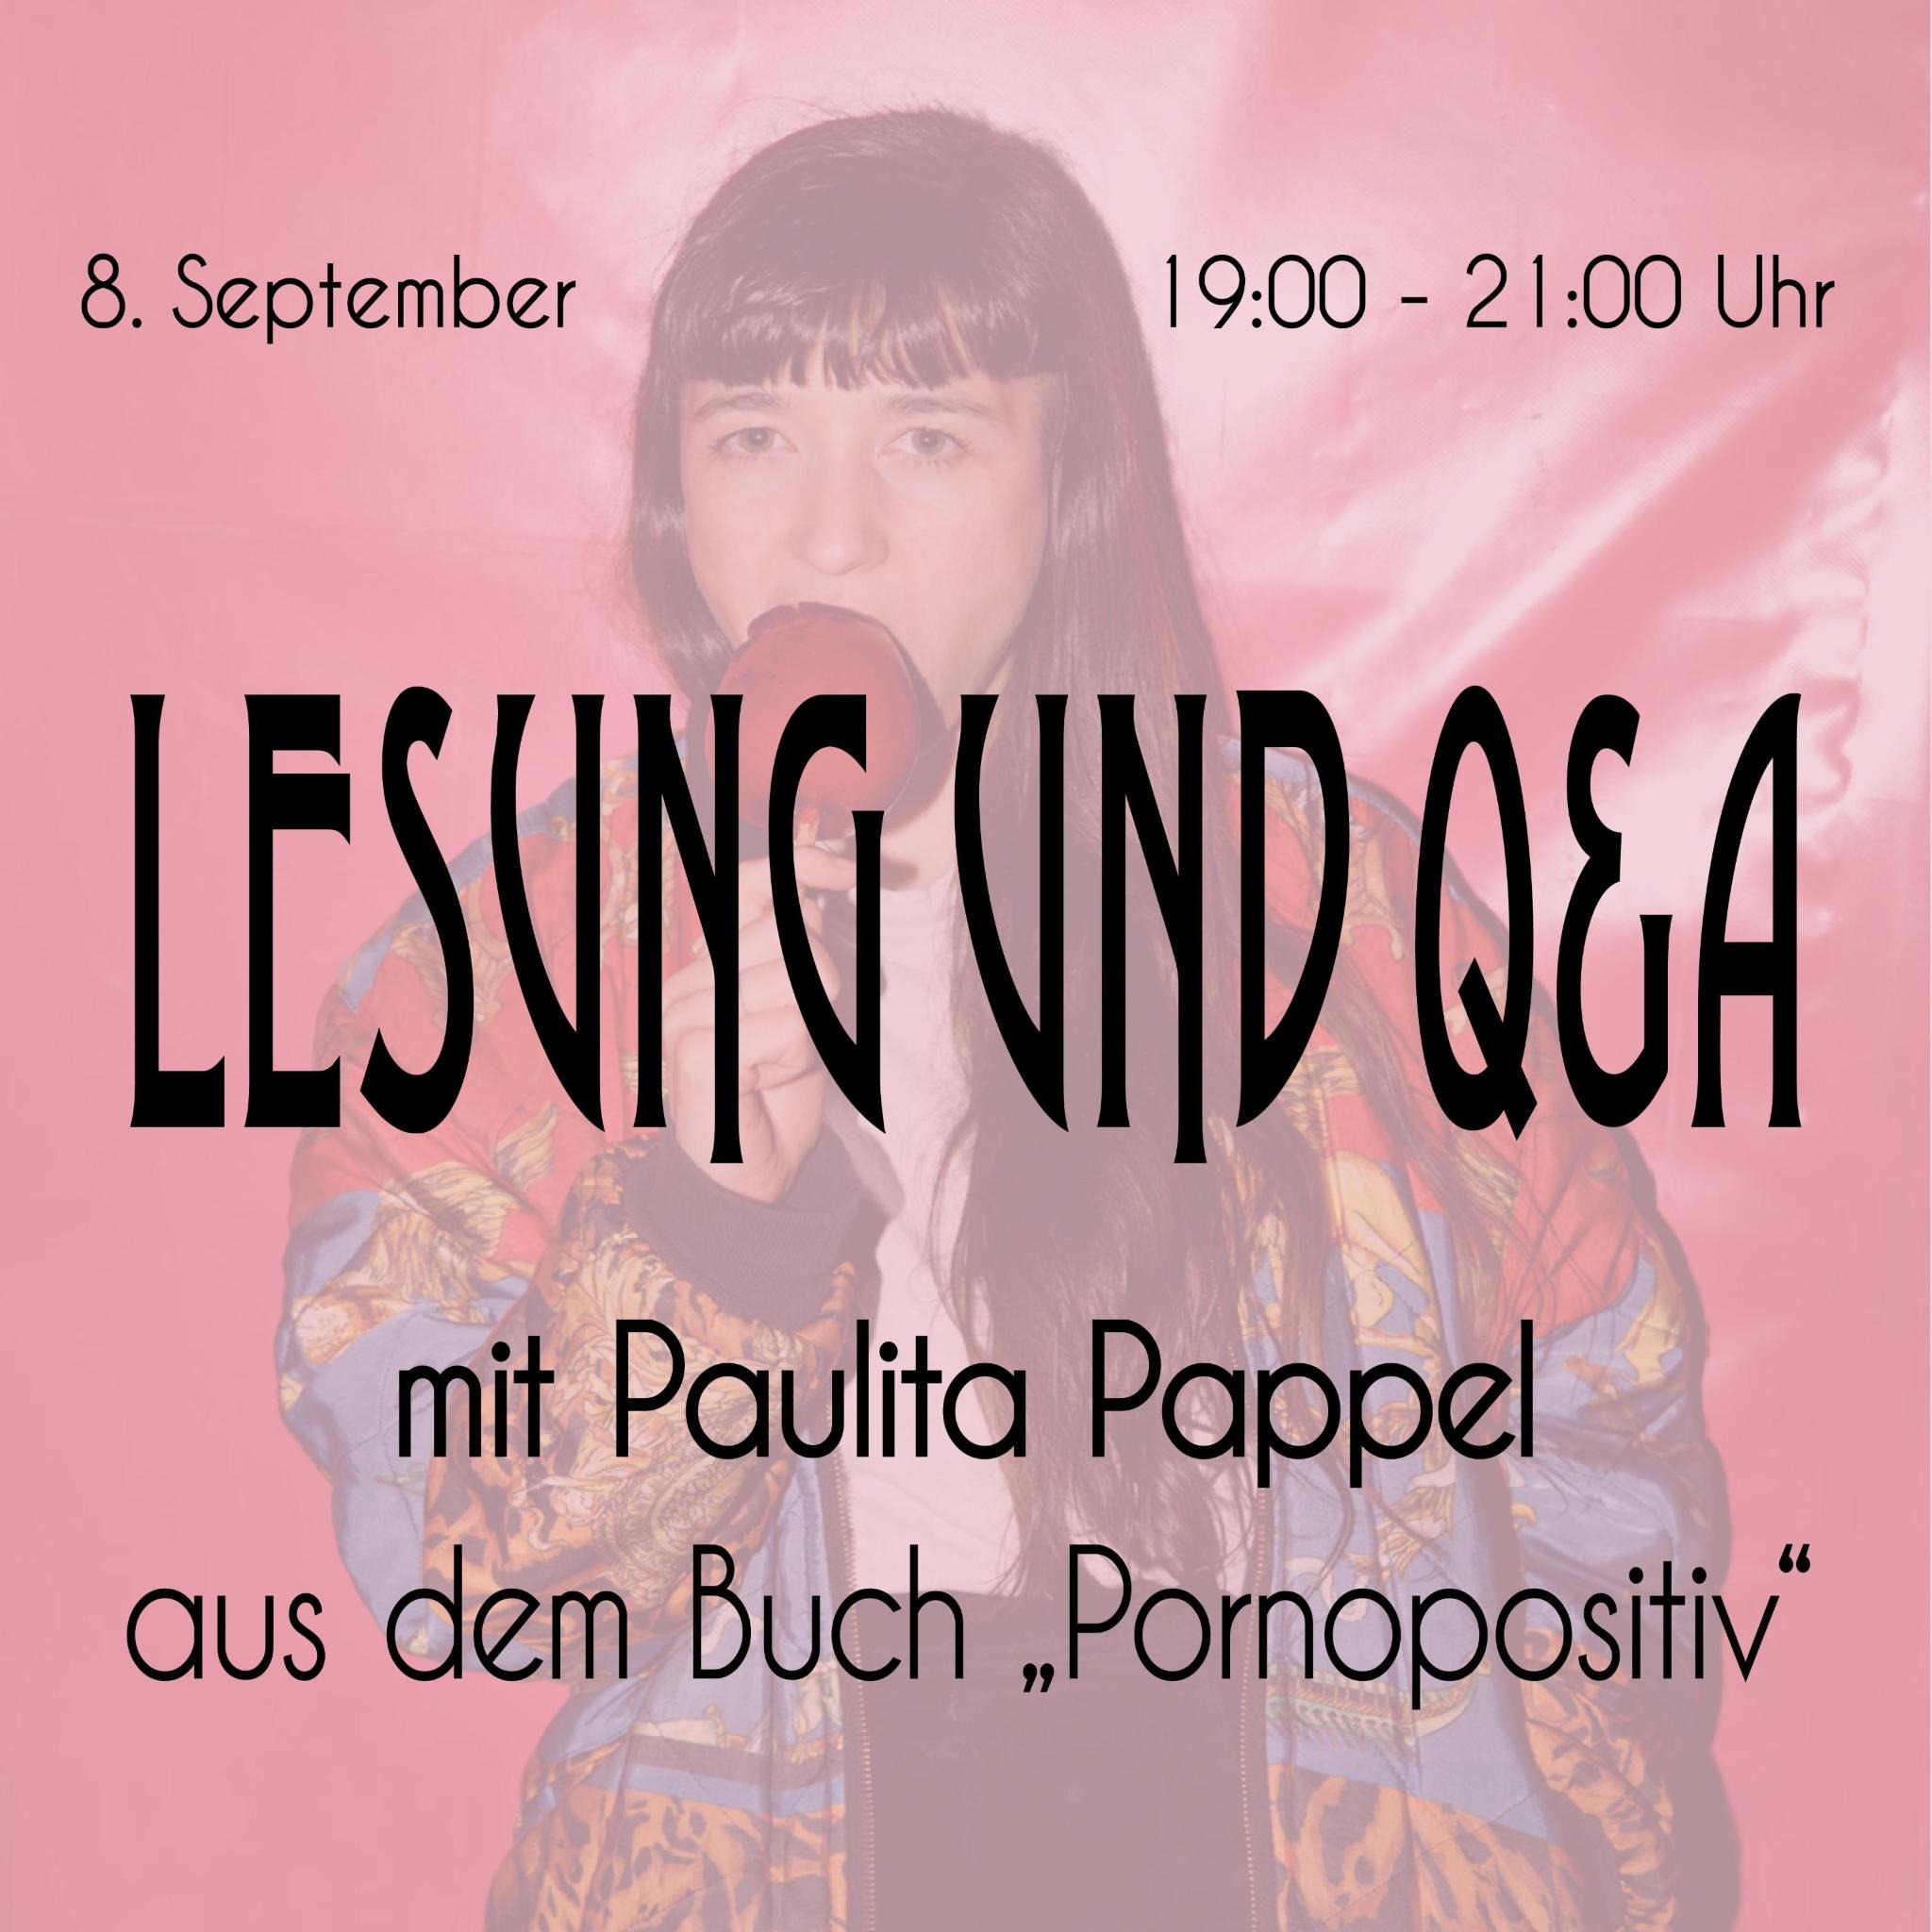 Lesung und Q&A „Pornopositiv“ mit Paulita Pappel